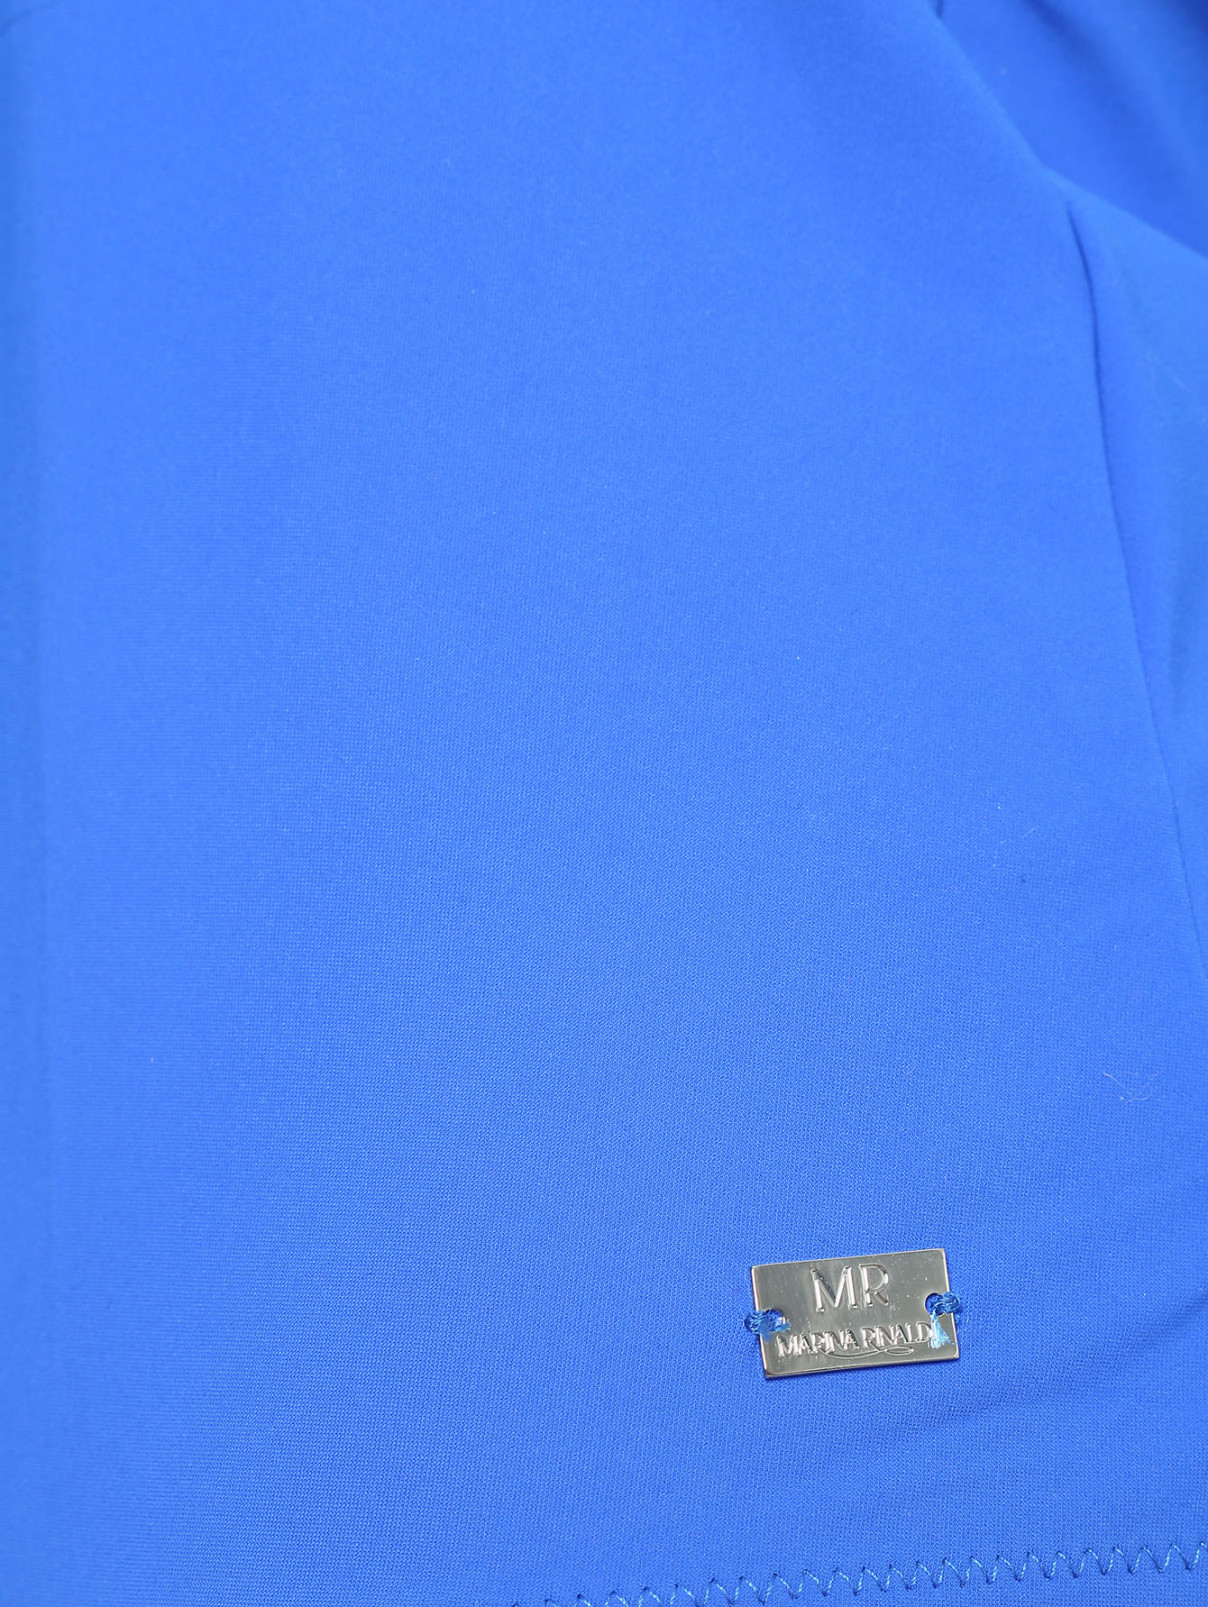 Купальник слитный со шнуровкой MARINA SPORT MARINA RINALDI  –  Деталь1  – Цвет:  Синий